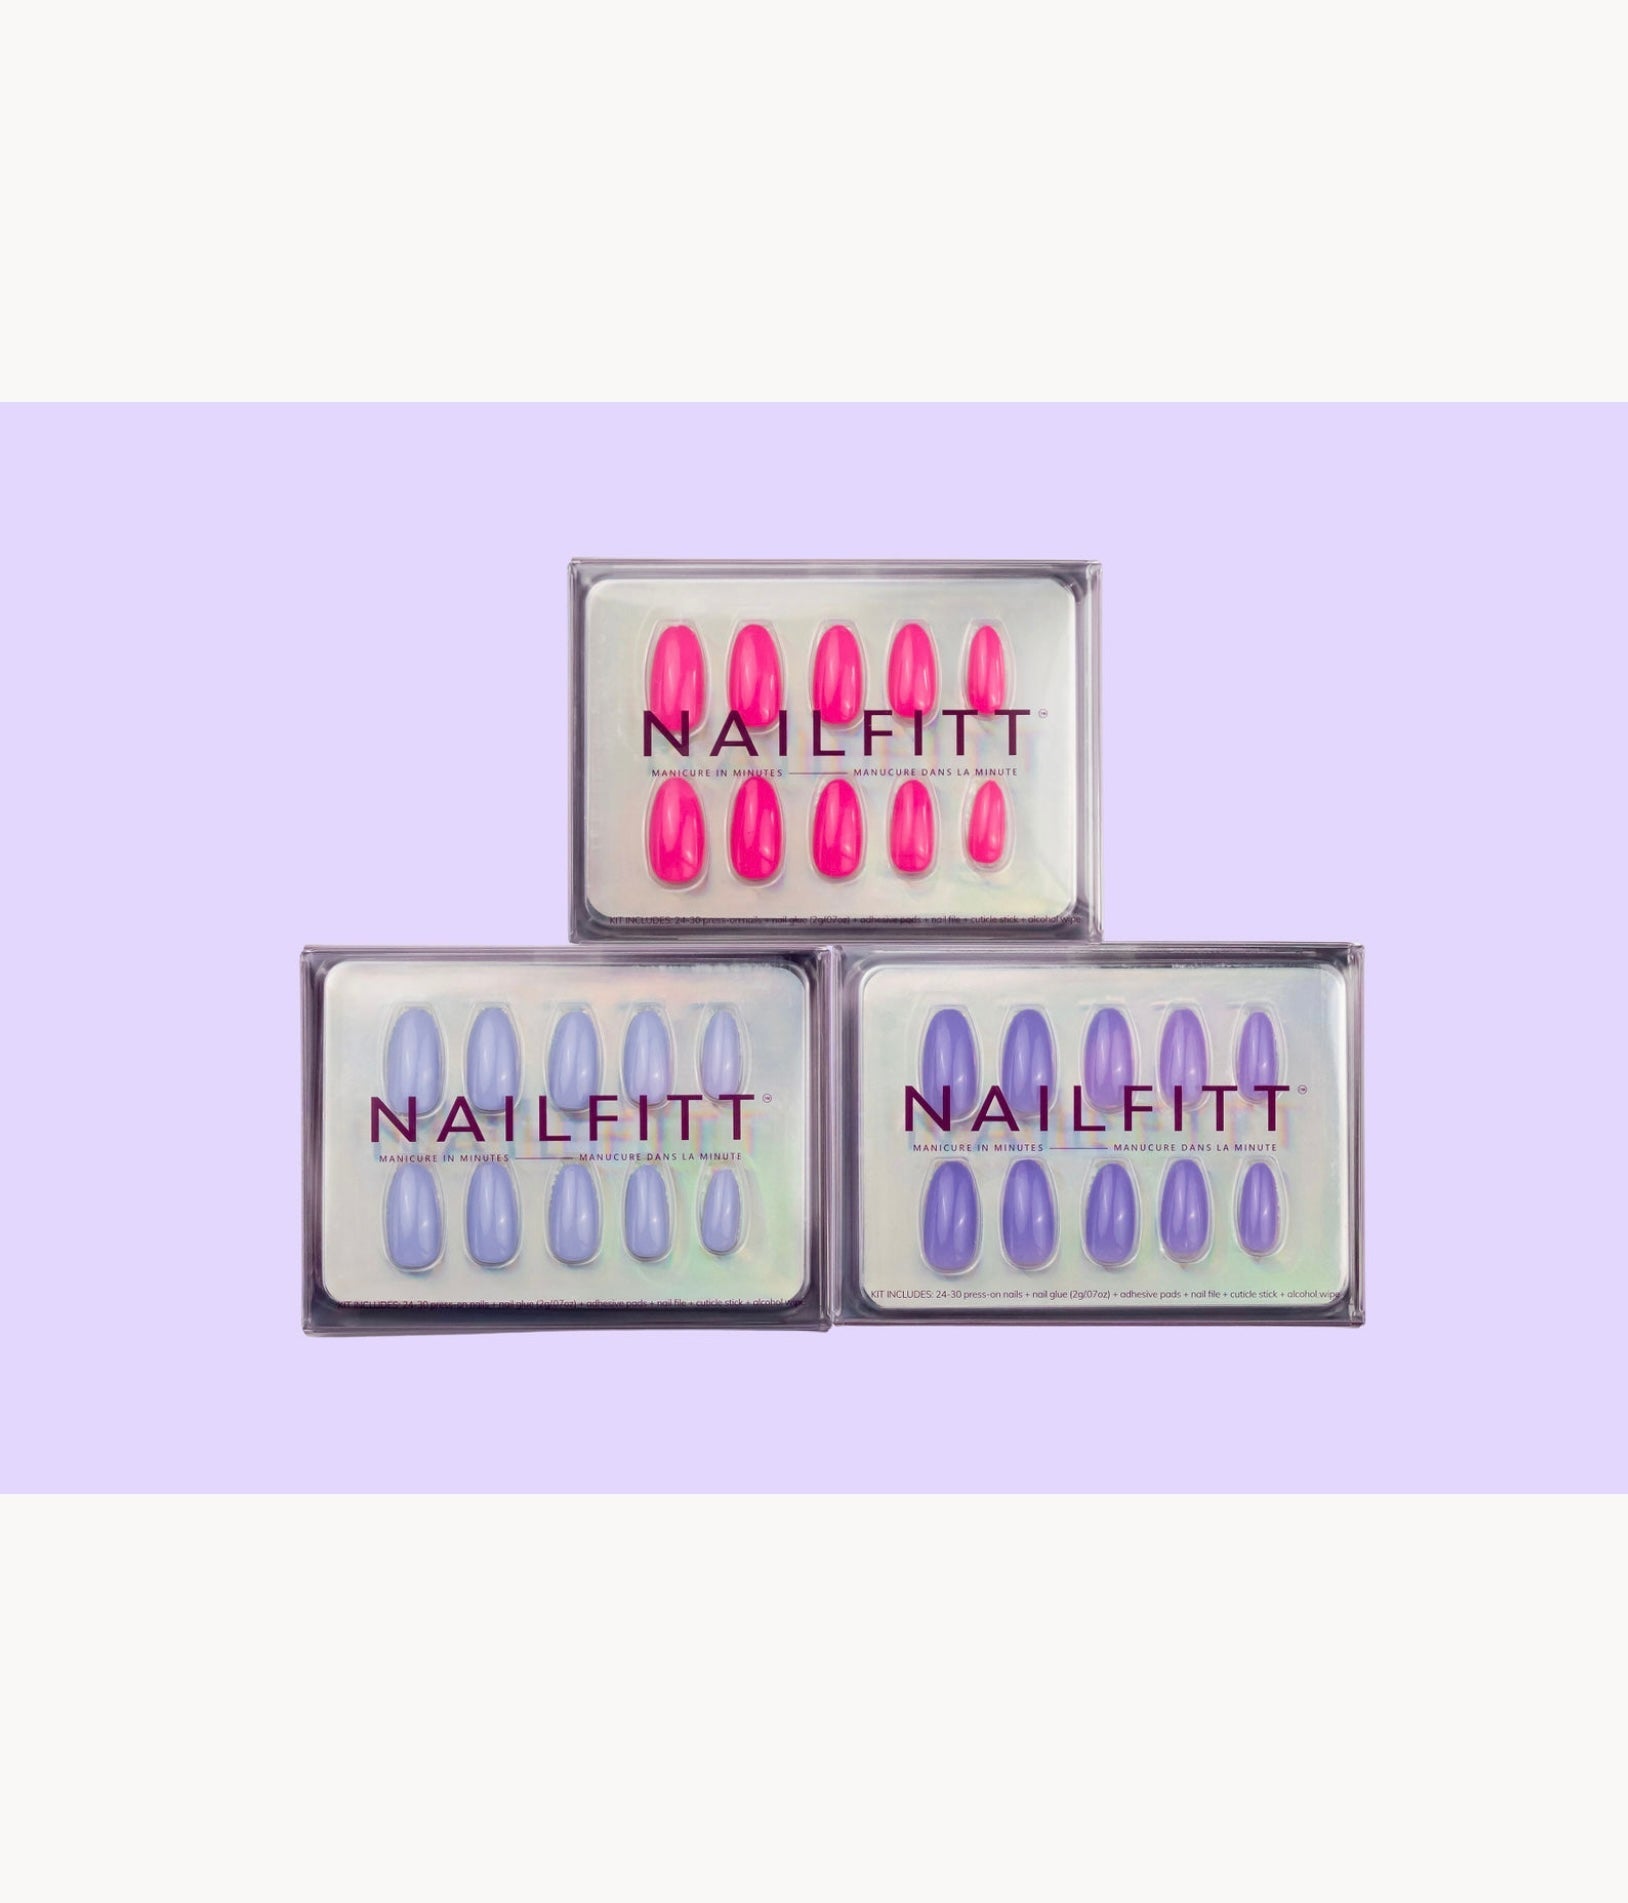 Nailfitt Mini Kits including trending colour Lavender Haze